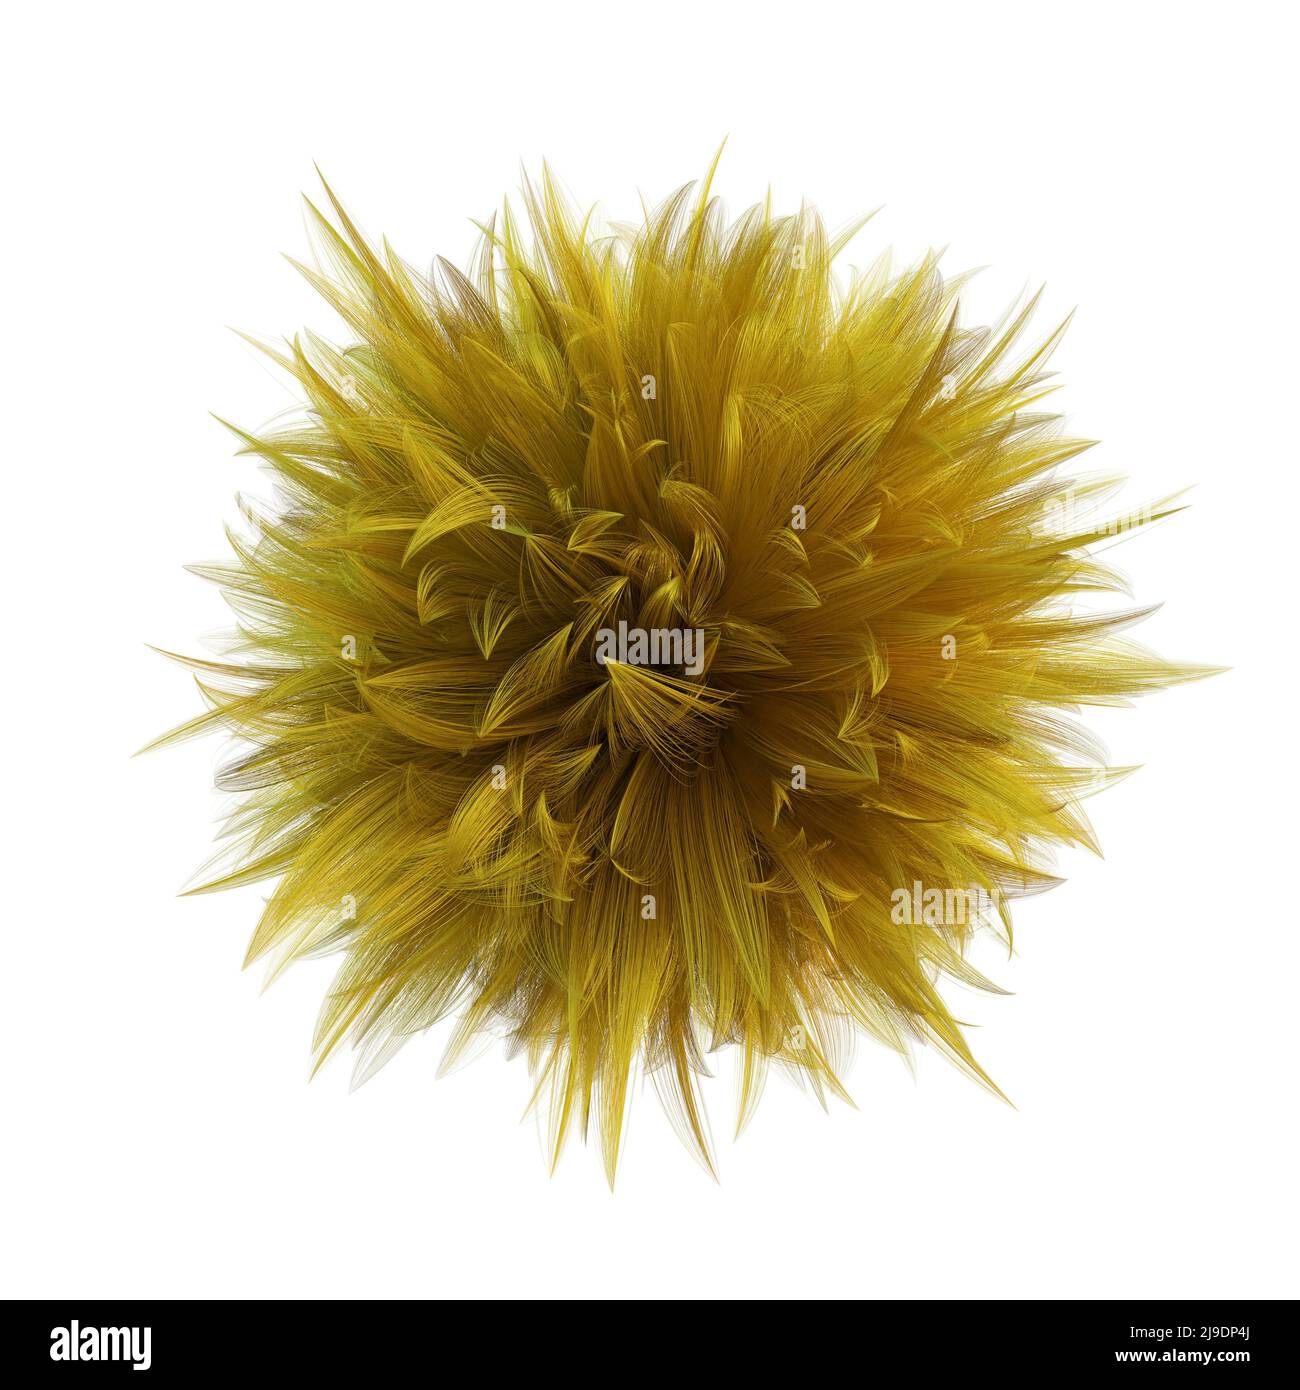 sfera pelosa, sfera gialla di furry isolata su sfondo bianco Foto Stock